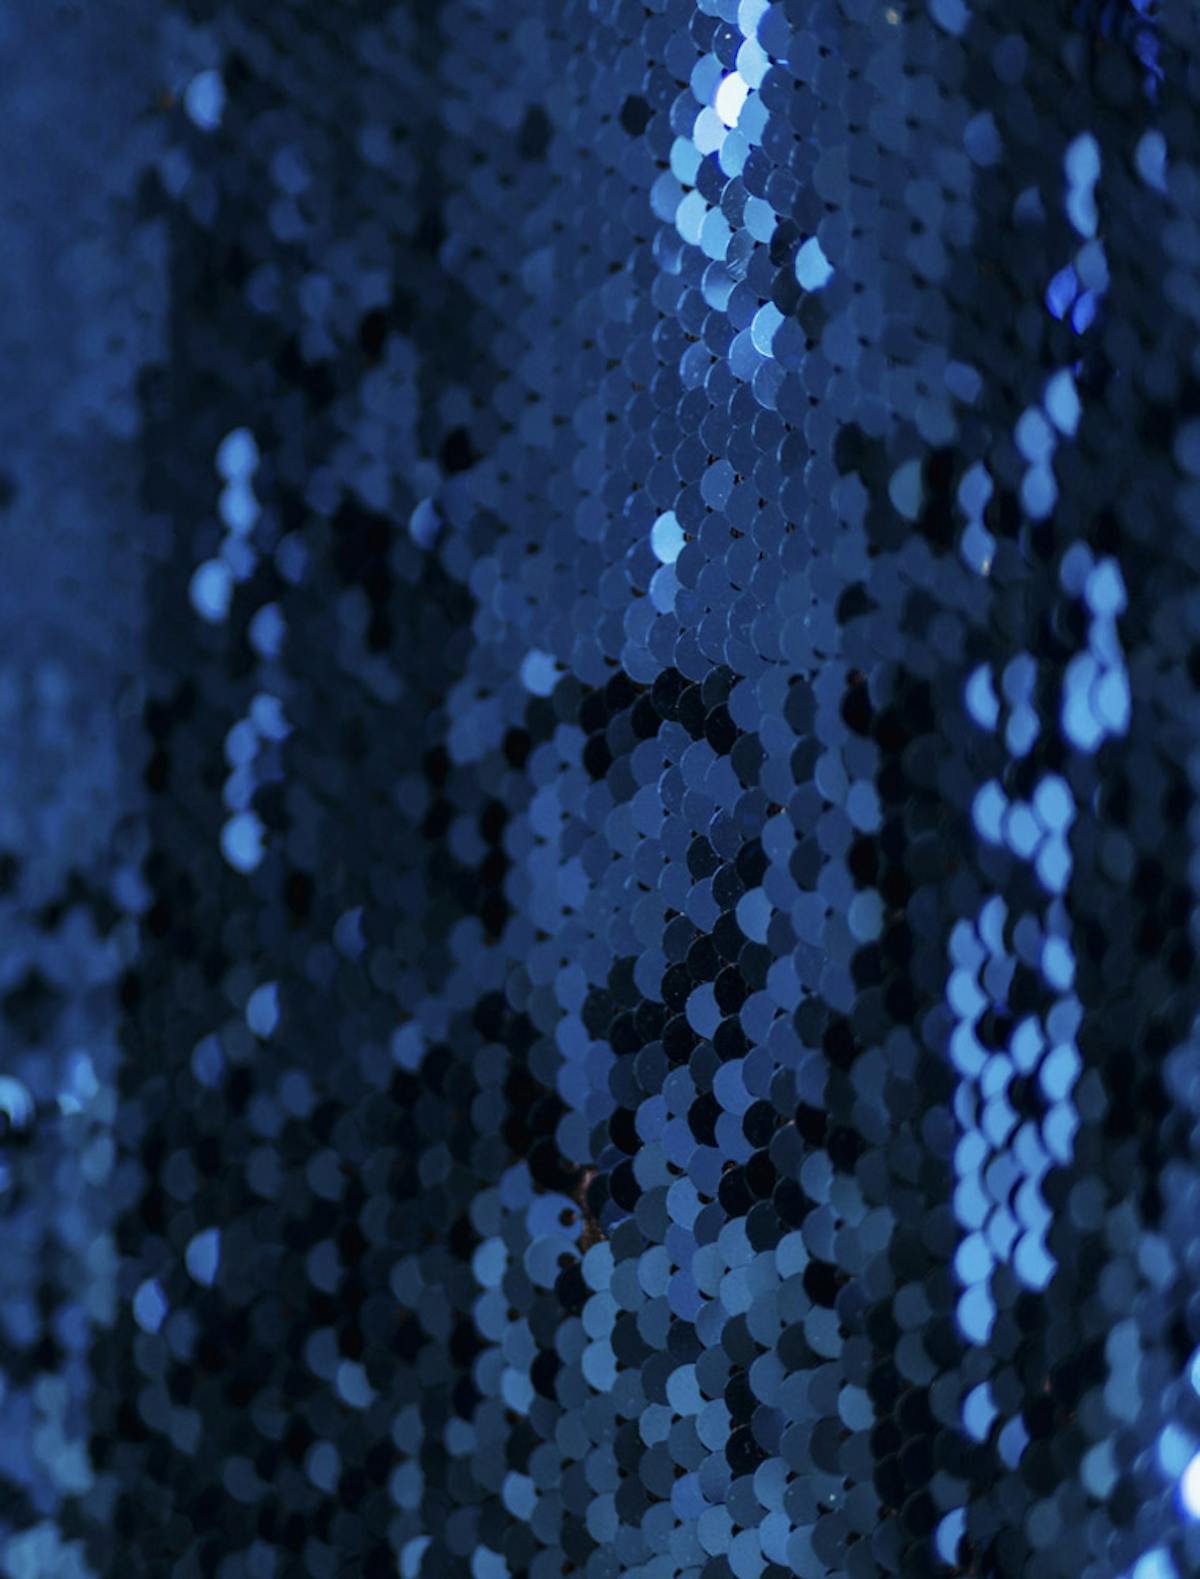  Vista ampliada de una tela de lentejuelas azul marino